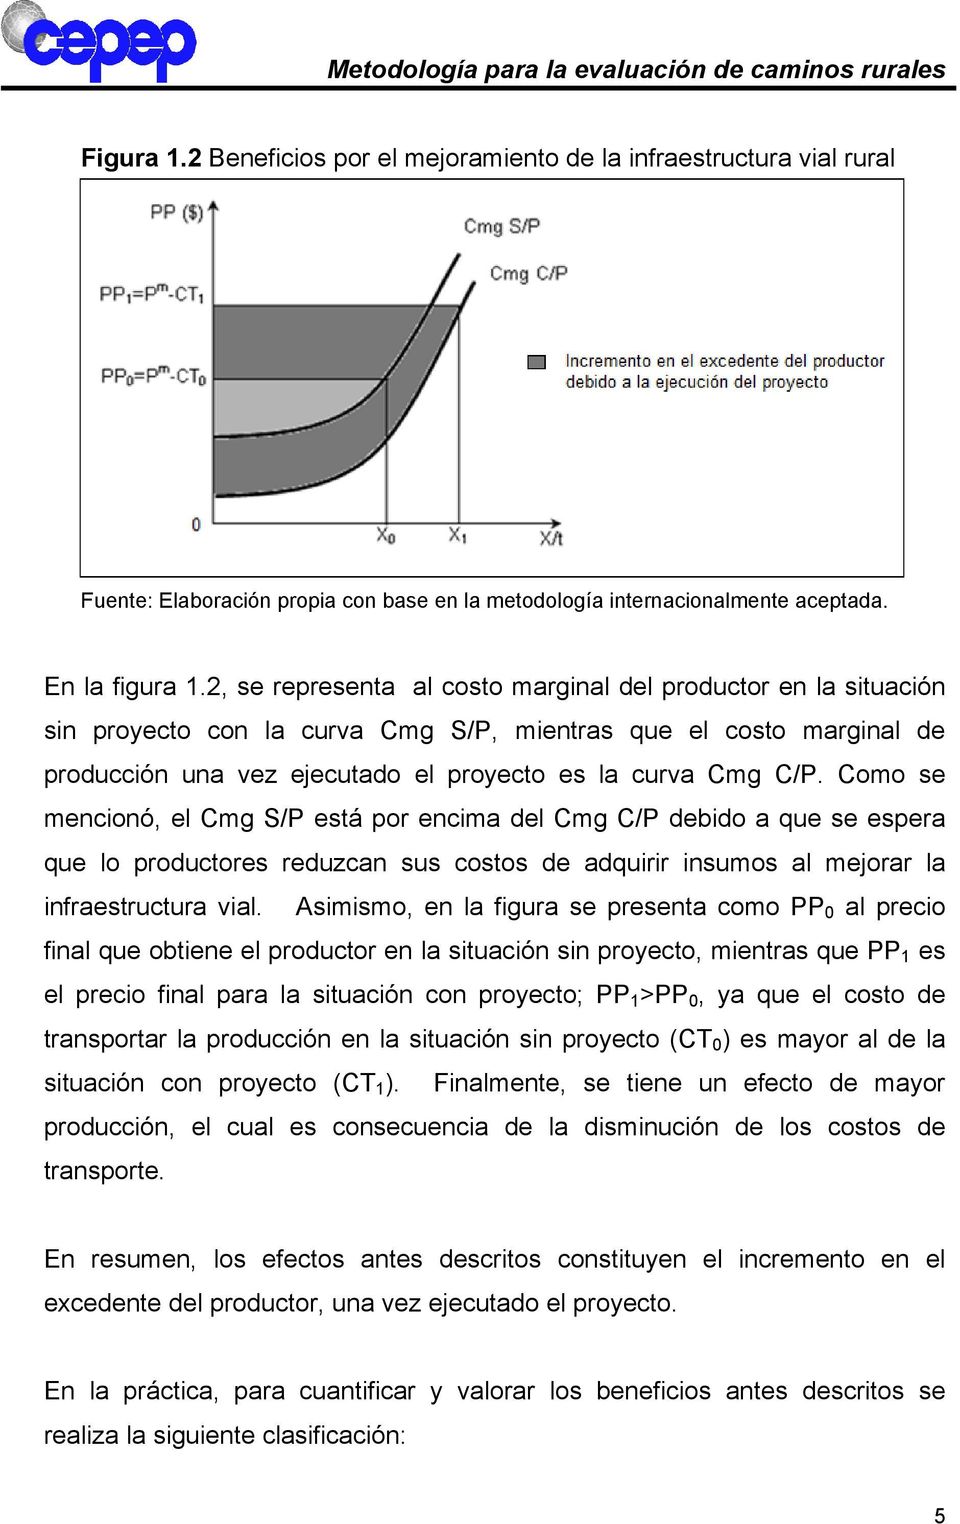 2, se representa al costo marginal del productor en la situación sin proyecto con la curva Cmg S/P, mientras que el costo marginal de producción una vez ejecutado el proyecto es la curva Cmg C/P.